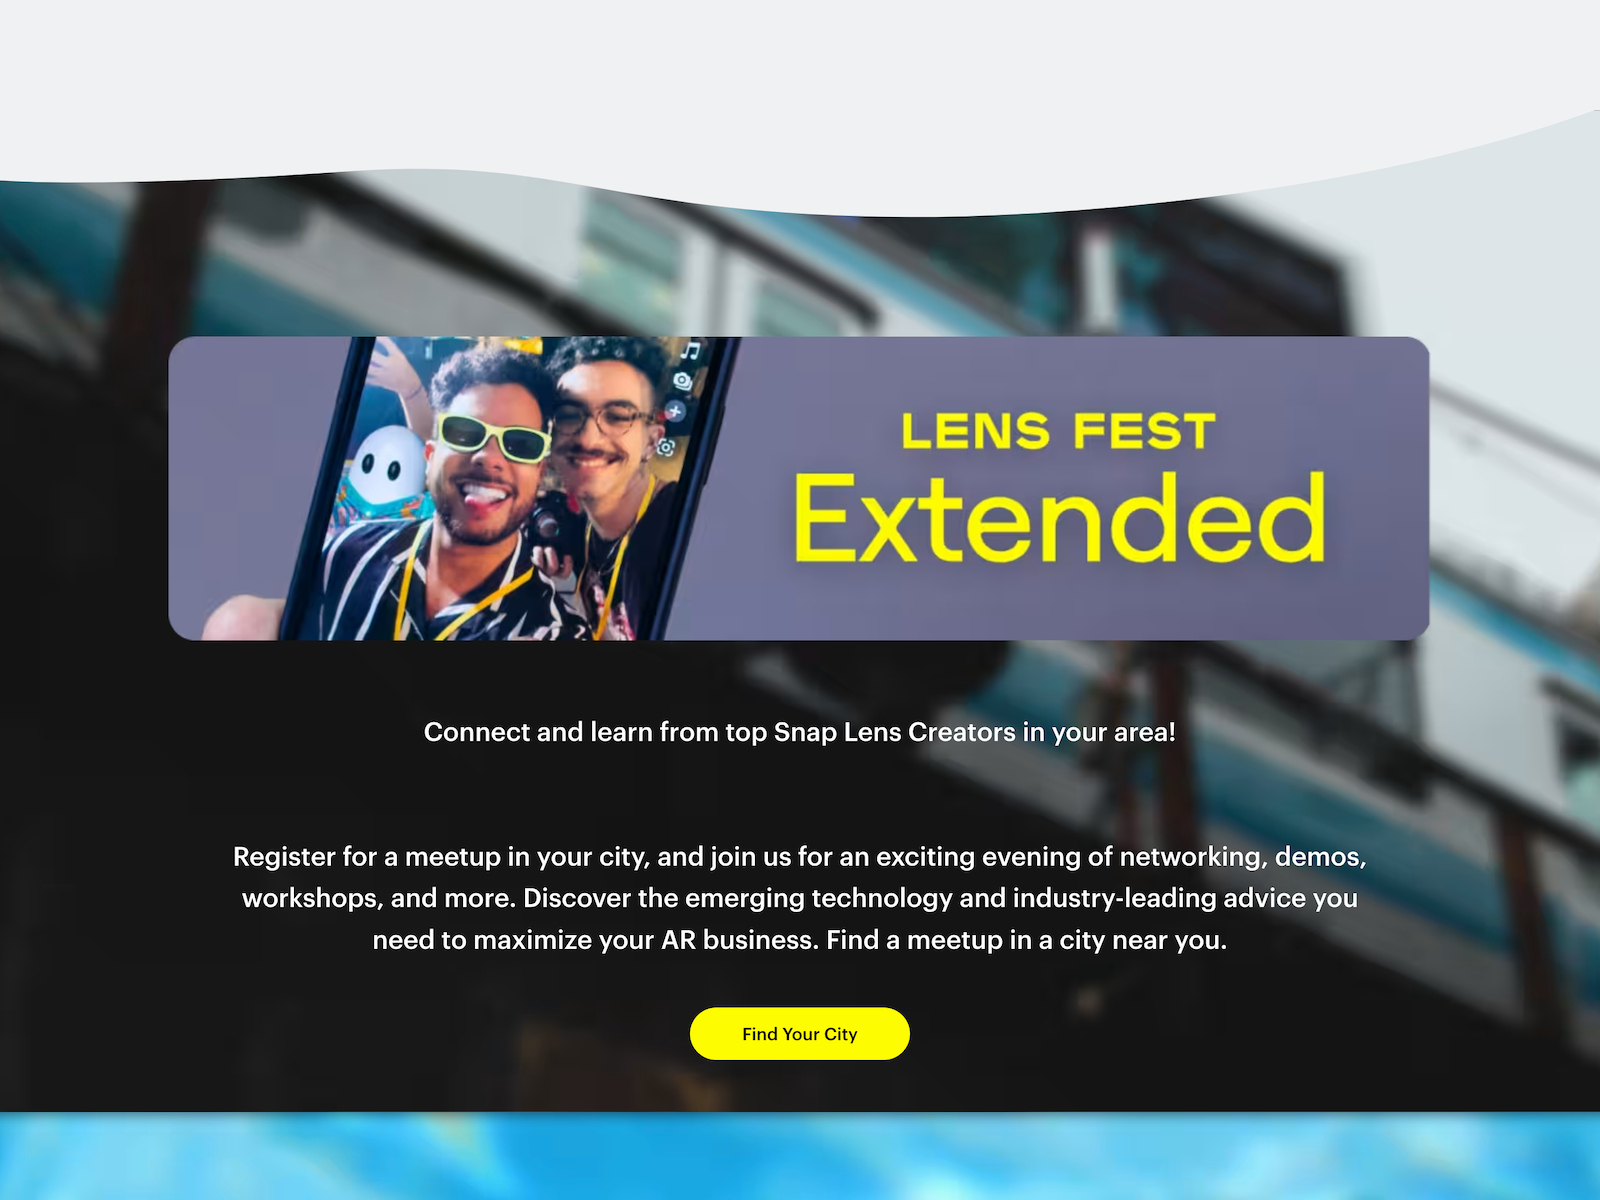 Lens Fest Extended